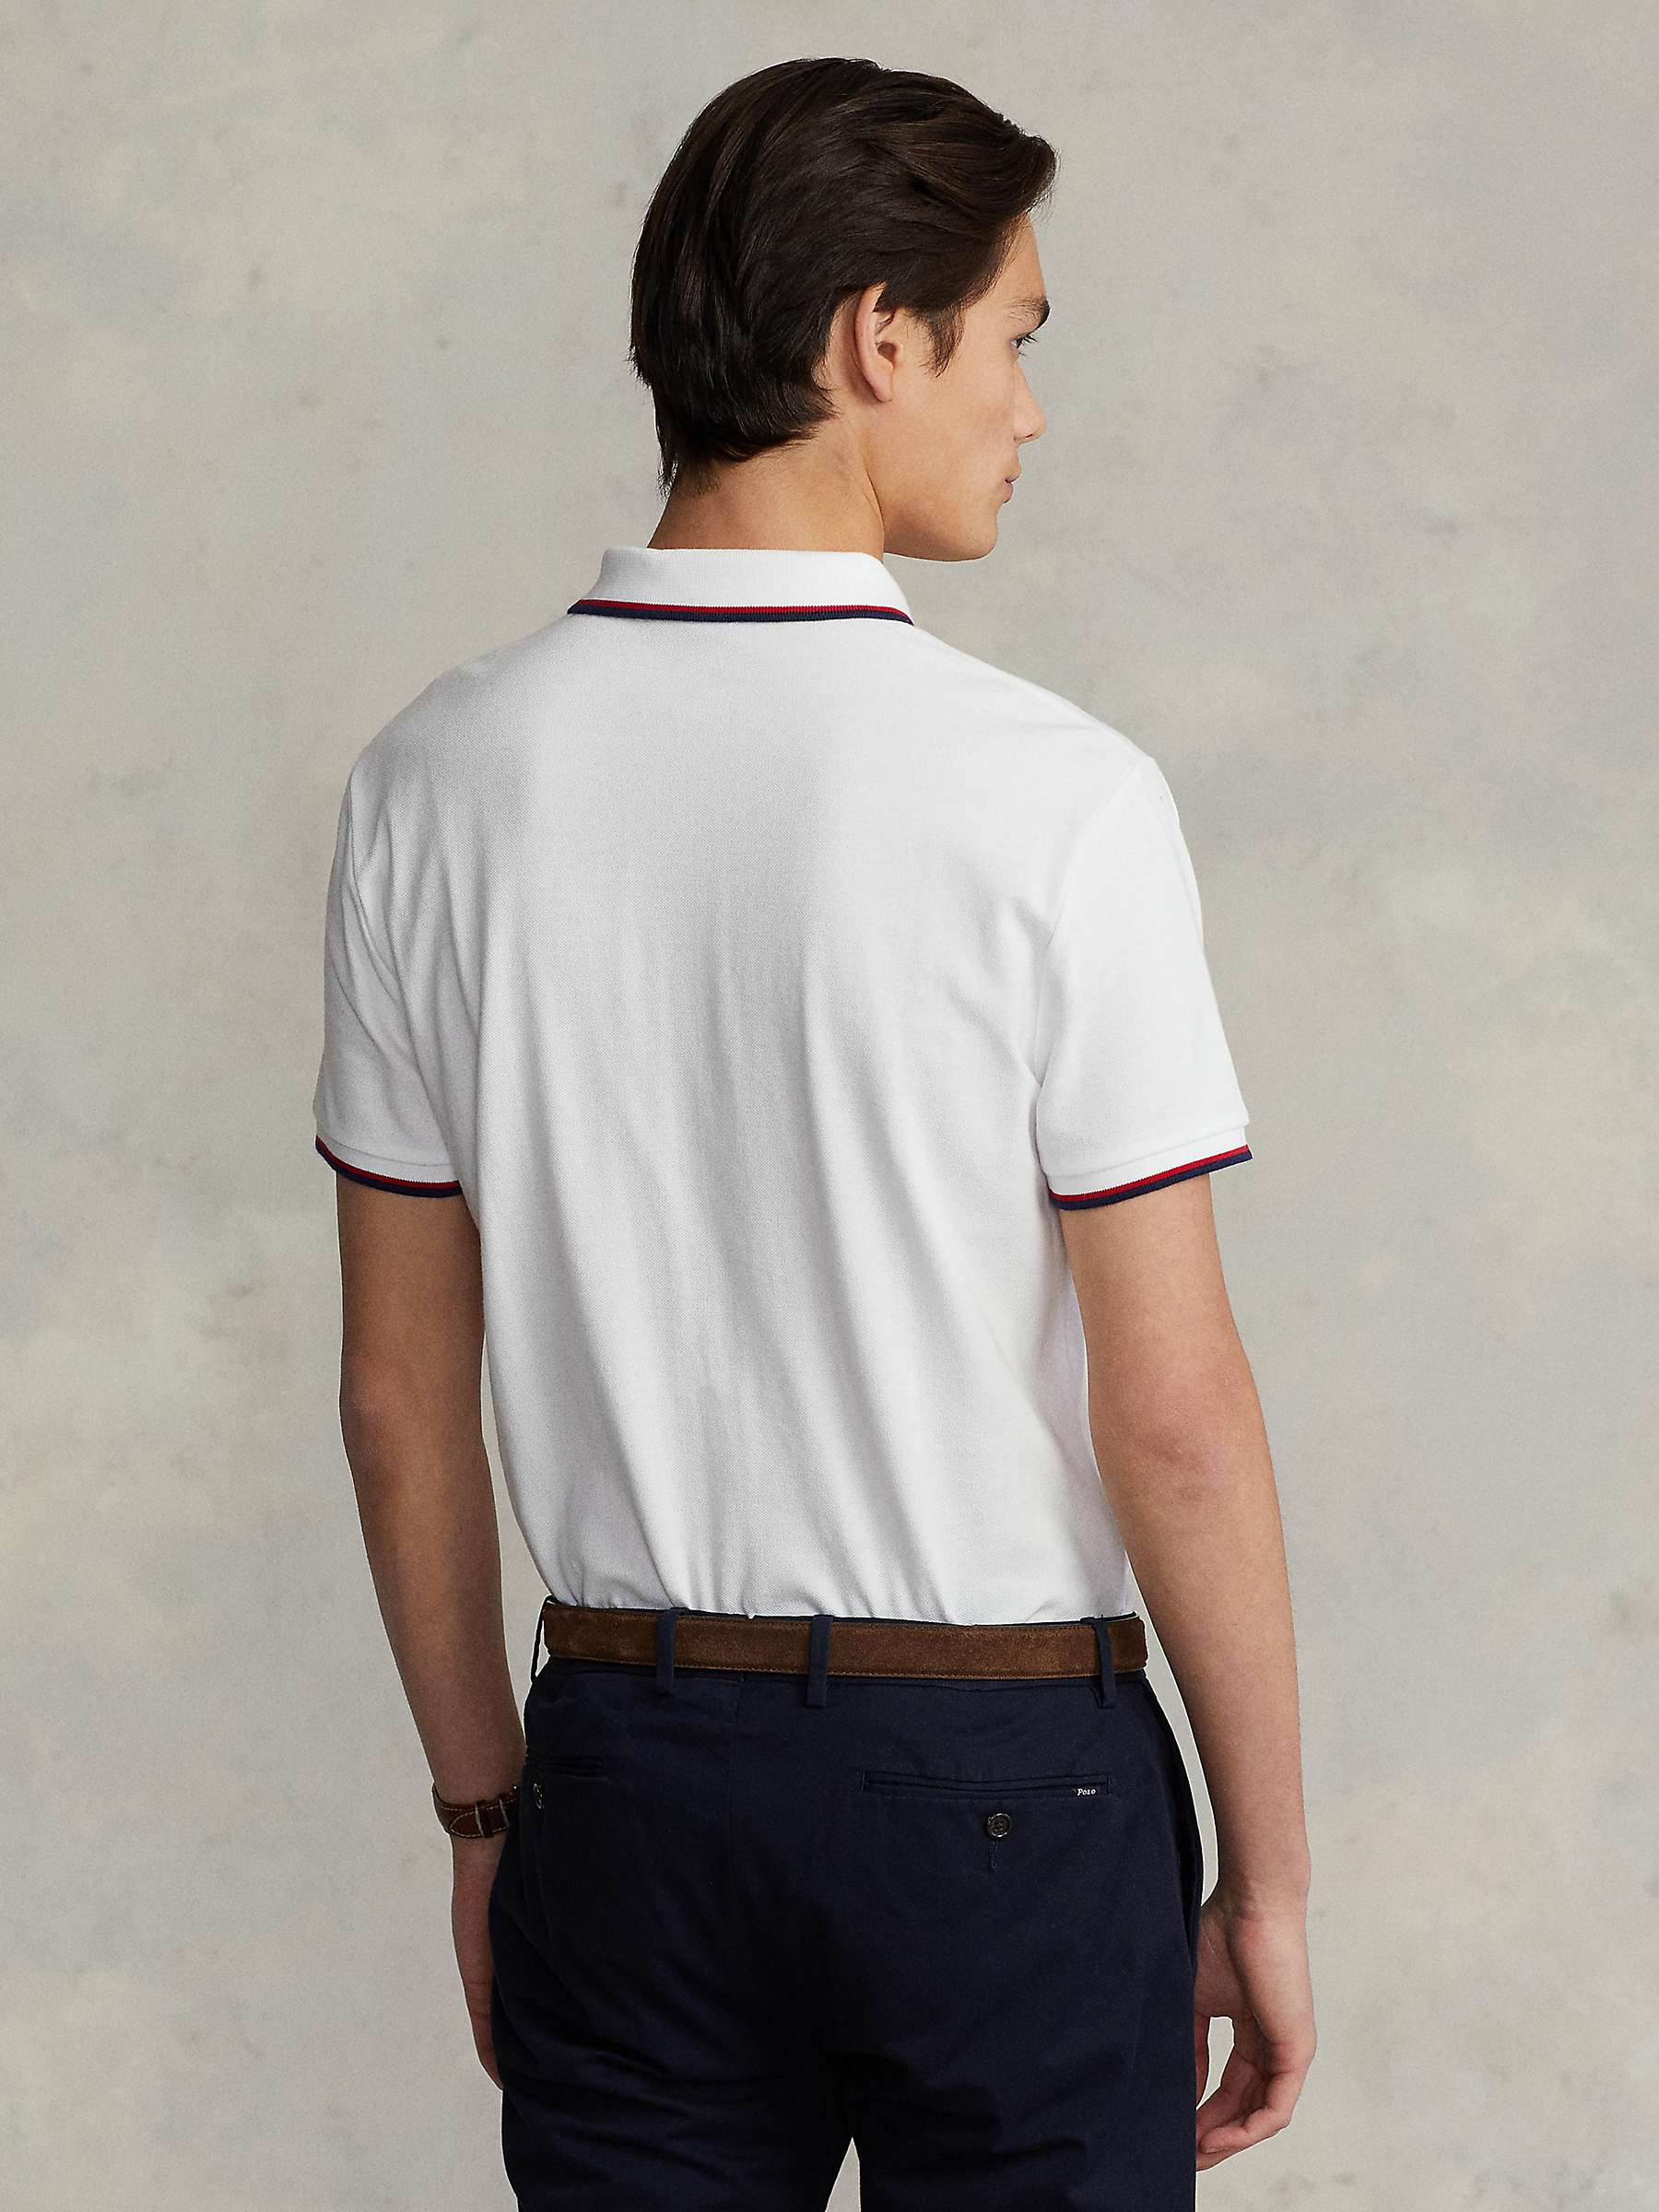 Buy Ralph Lauren Custom Slim Fit Mesh Polo Shirt, White Online at johnlewis.com